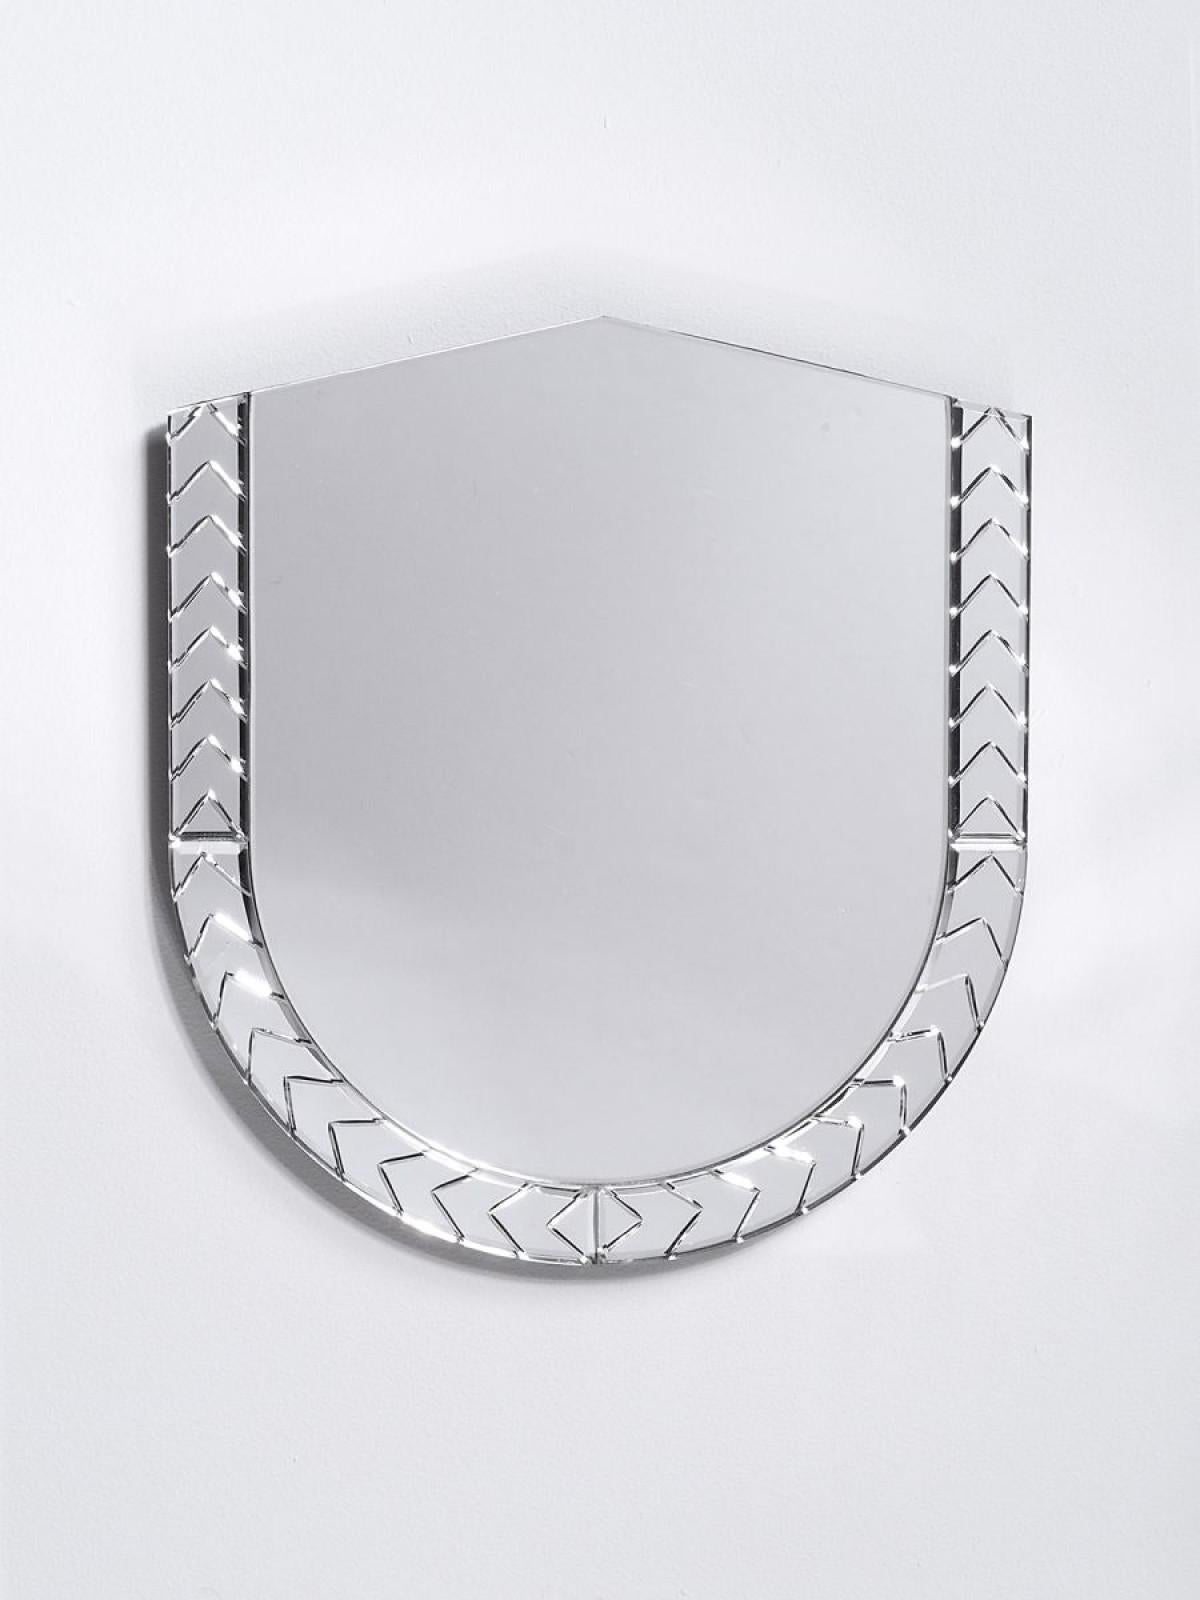 Großer Spiegel Scena Elemento Due Murano von Nikolai Kotlarczyk
Abmessungen: T 3 x B 65 x H 60 cm 
MATERIALIEN: versilbertes geschliffenes Glas, dunkelgraue Holzrückwand. 
Auch in anderen Designs und Abmessungen erhältlich.


Elemento ist eine Serie